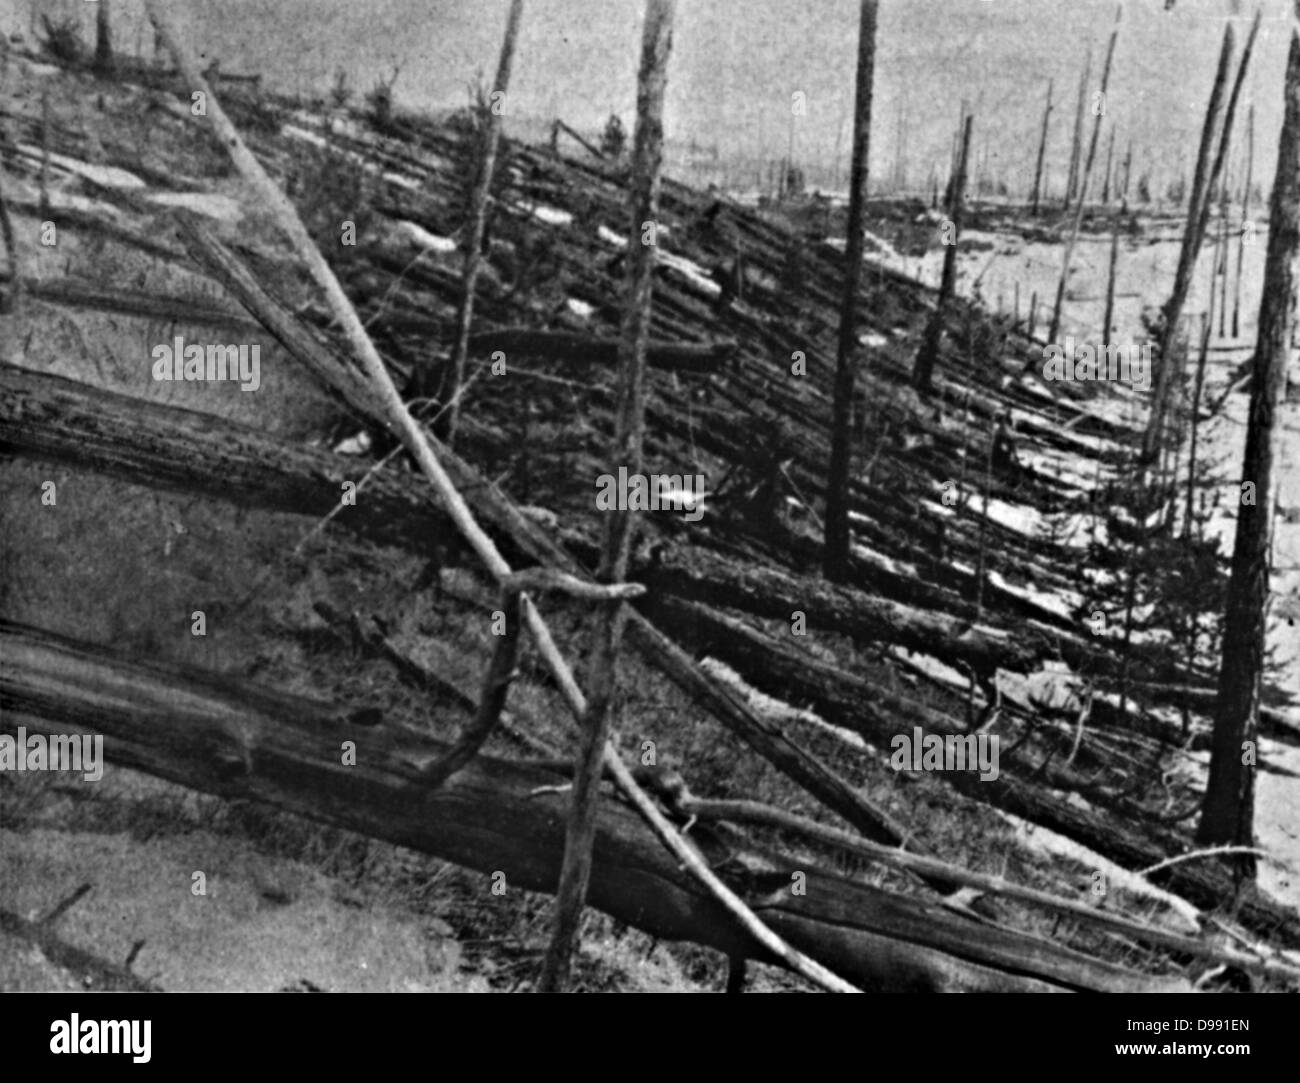 Das Tunguska-ereignis, oder Tunguska Explosion, 30. Juni 1908, in der Nähe des Podkamennaya Tunguska, Fluß, Krasnoyarsk Krasnodar, Russland. Ursache bestritten, aber allgemein akzeptiert als von einem Meteoriten verursacht. Detail der gestrahlten Bäume. Stockfoto